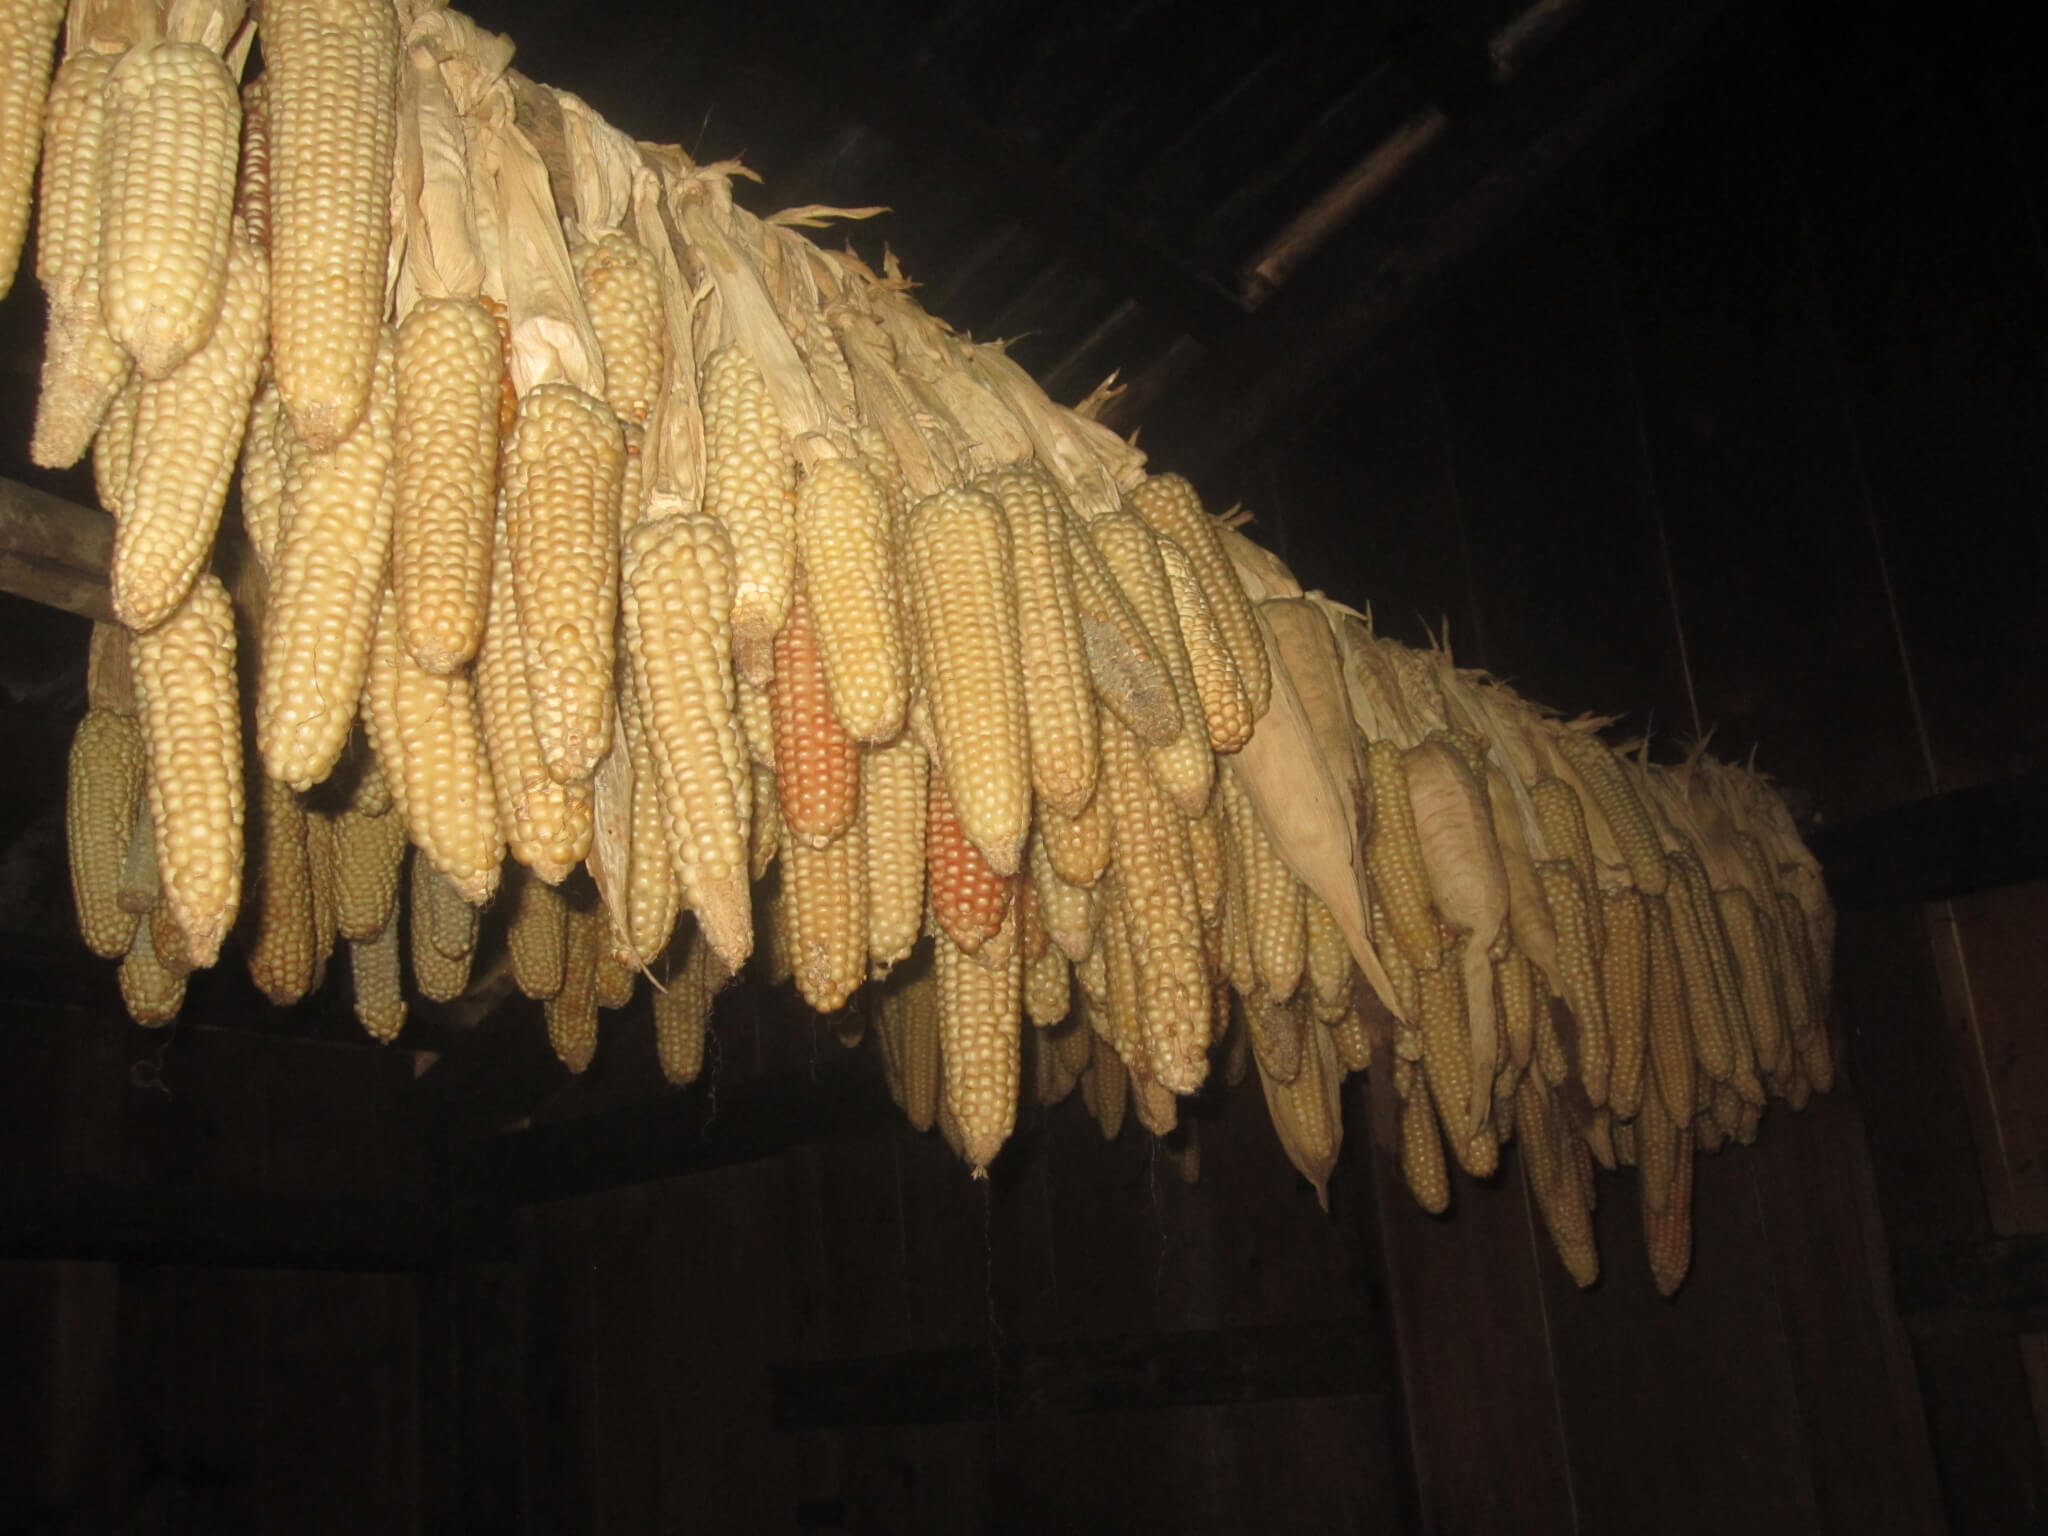 Bild: Maiskolben werden zum Trocknen aufgehängt